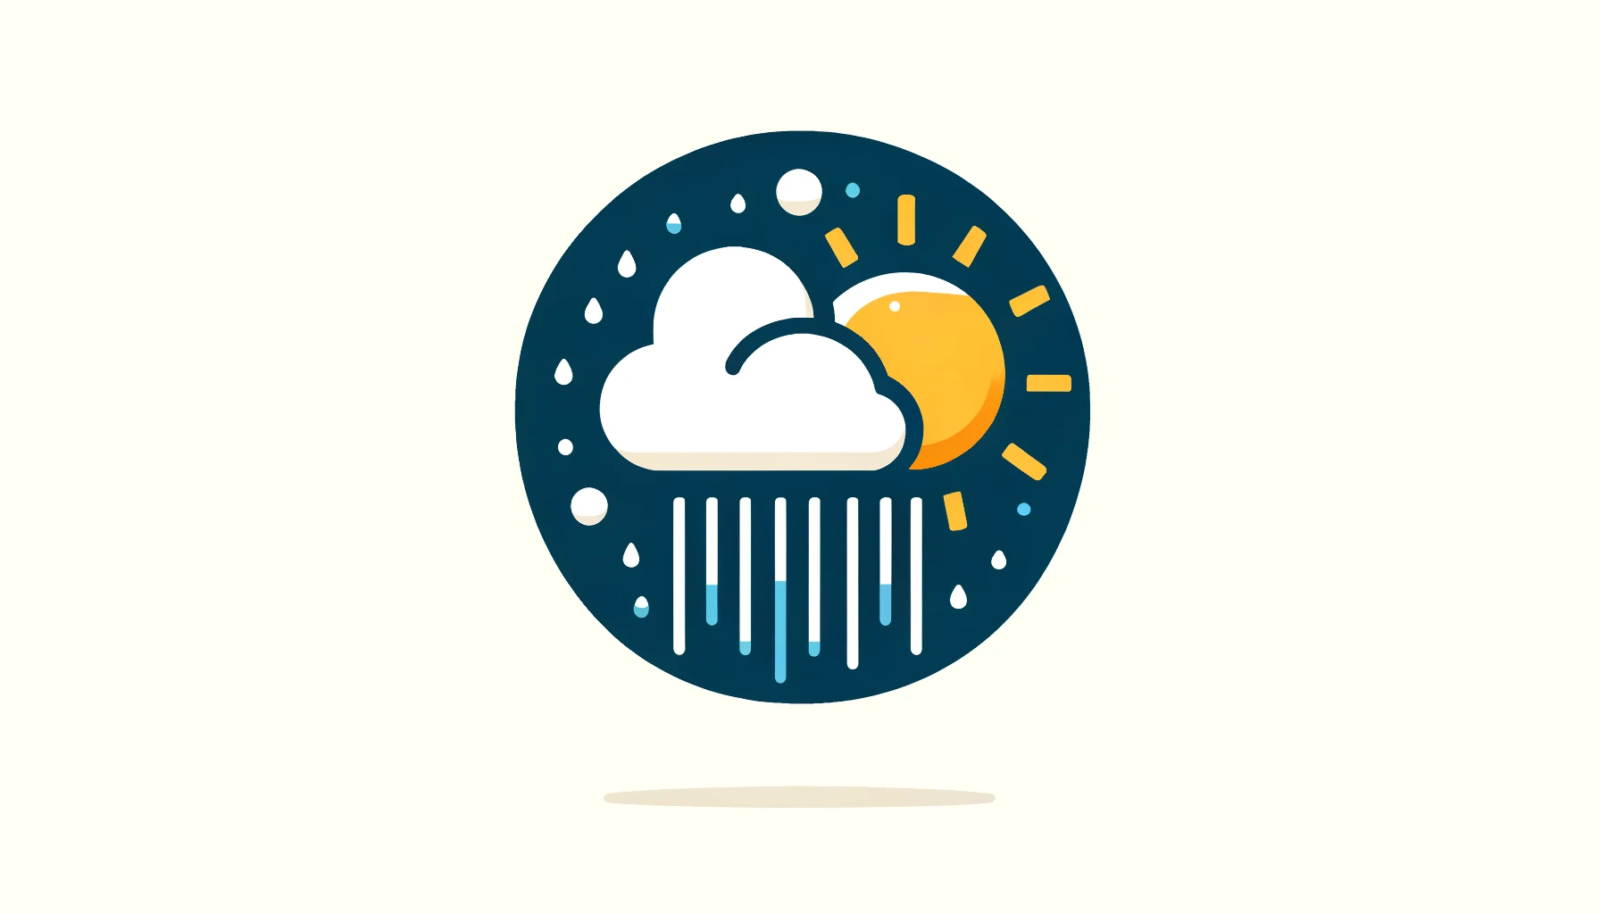 Símbolo de clima variável com nuvens, chuva fraca e sol